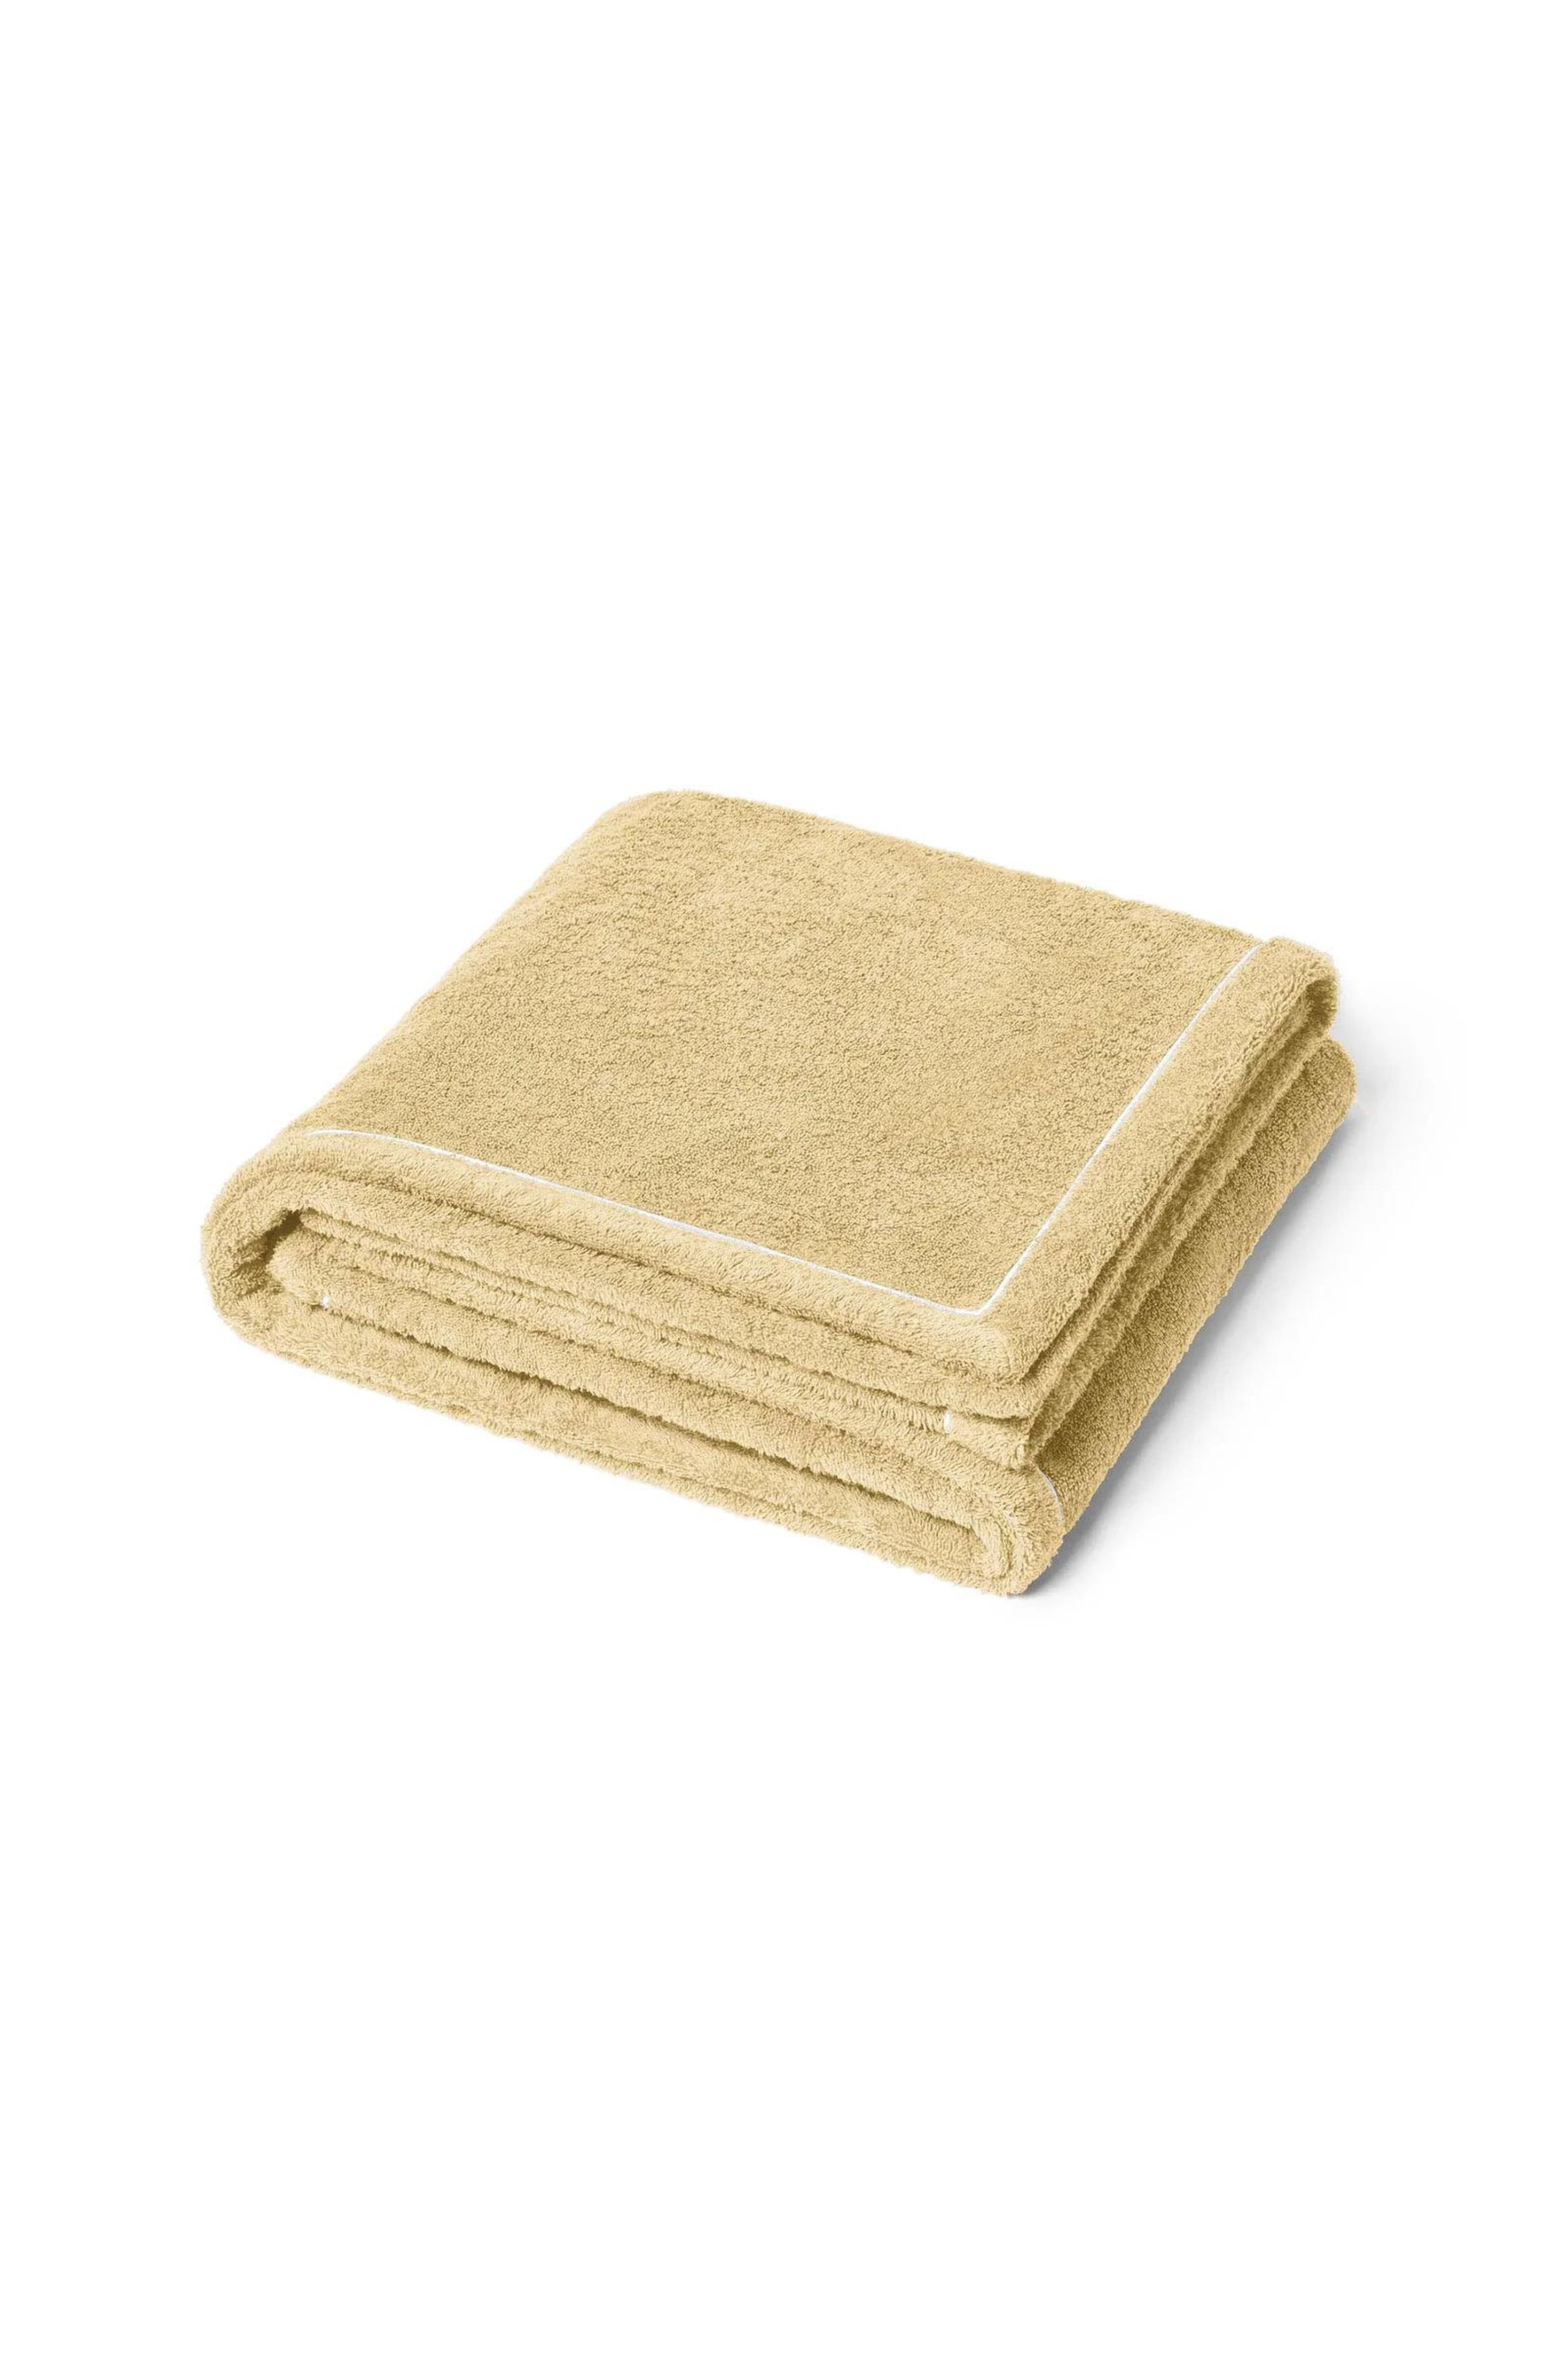  Sable deckchair towel